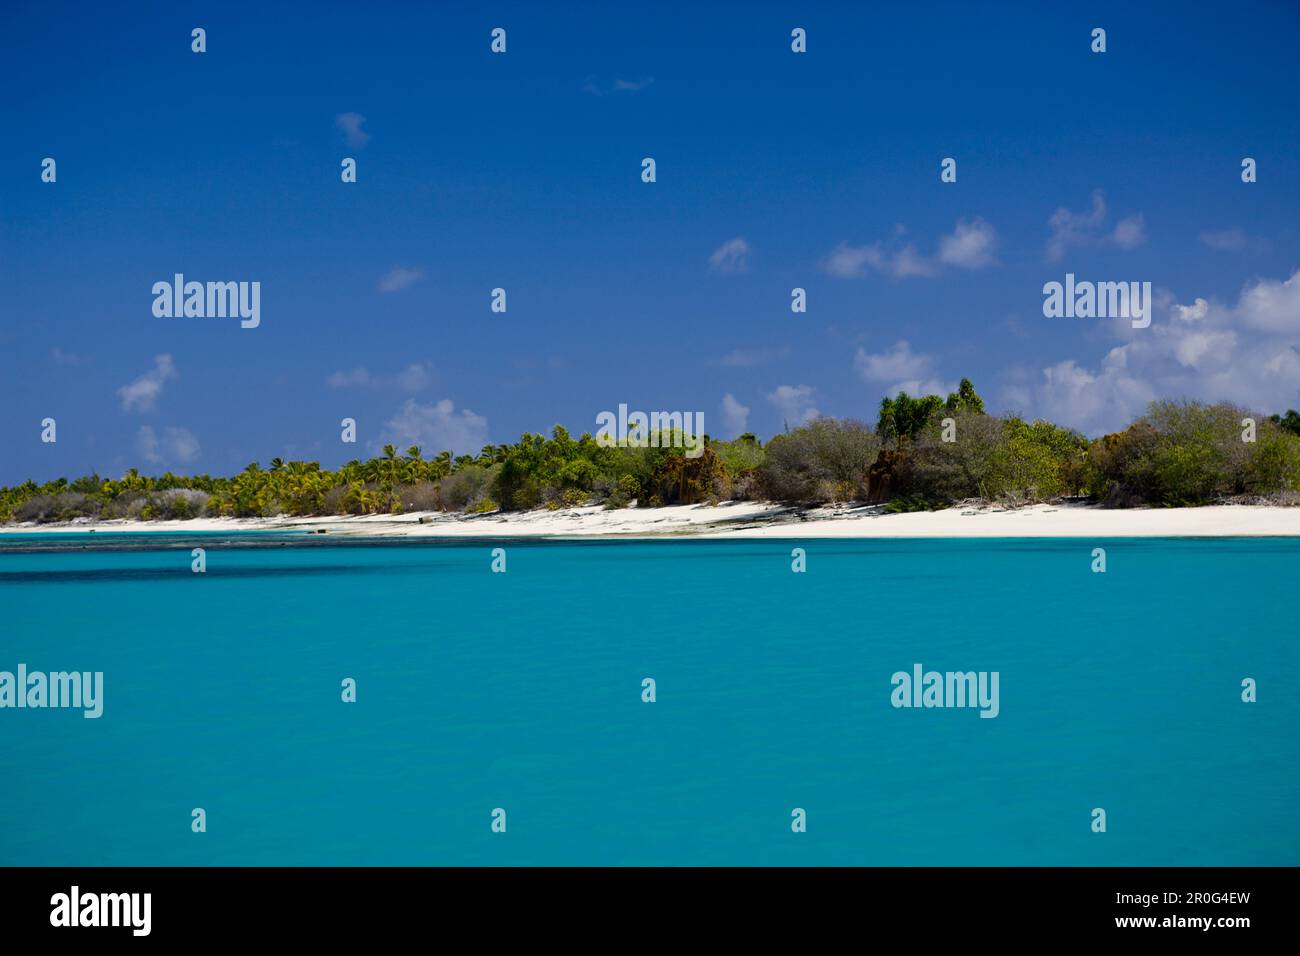 Lagune von Bikini, Marshallinseln, Bikini-Atoll, Mikronesien, Pazifik Stockfoto